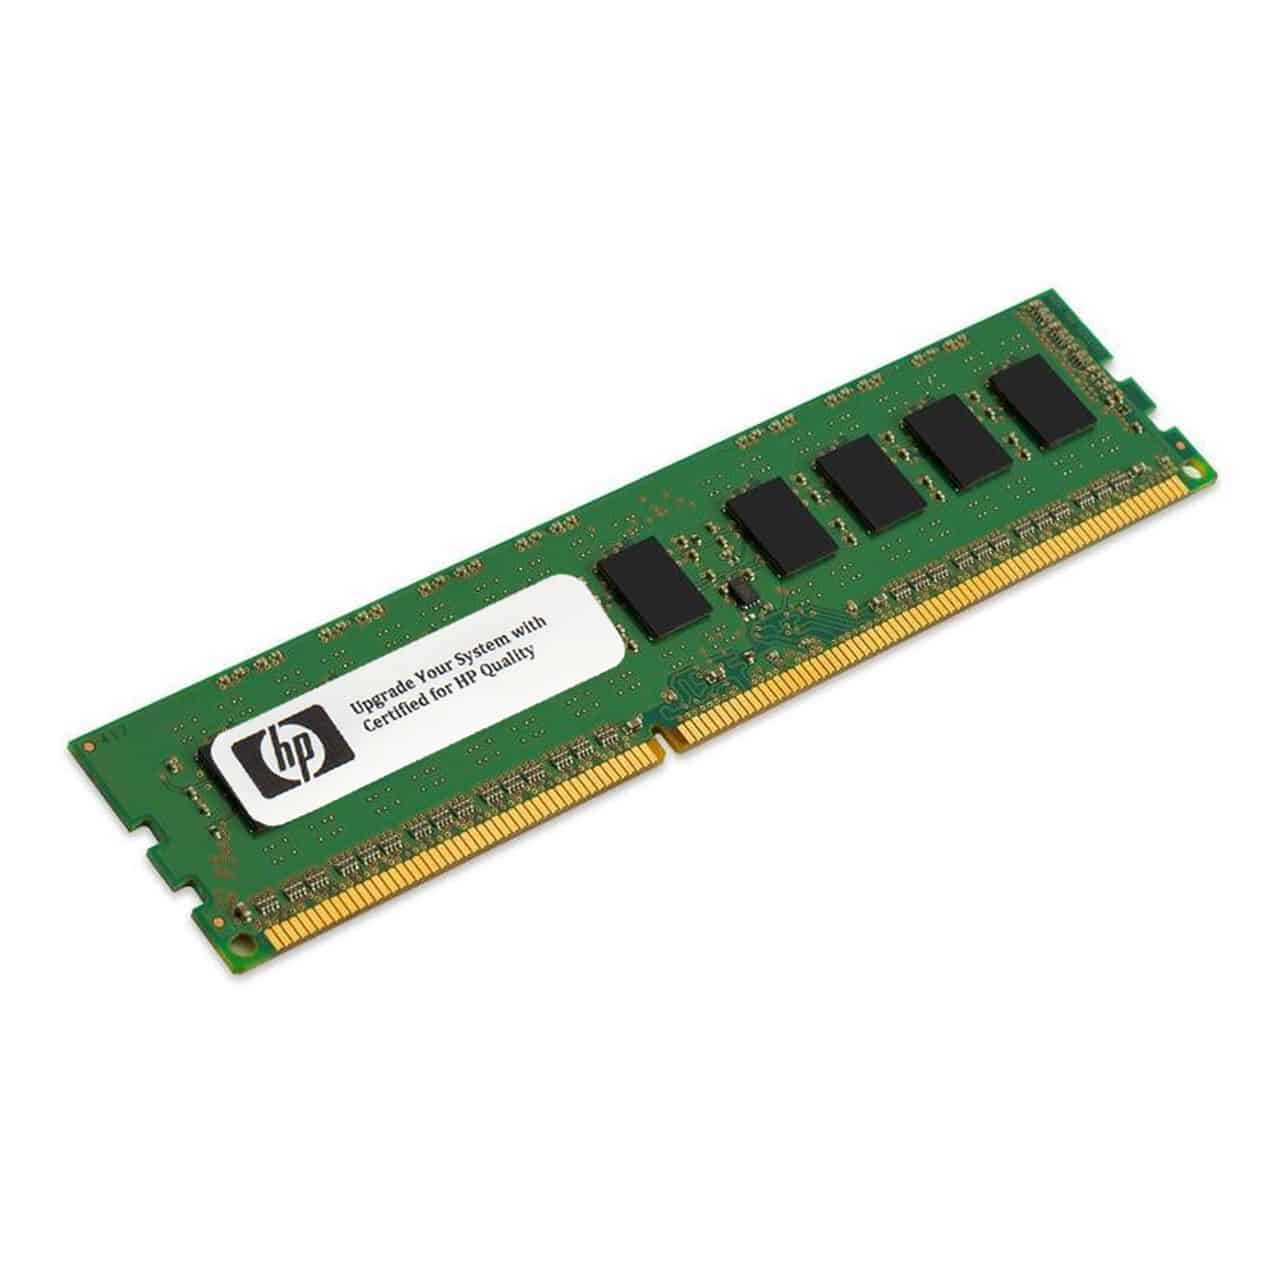 זיכרון למחשב נייח - HP 627812-B21 16GB 1333MHz DDR3 ECC REG